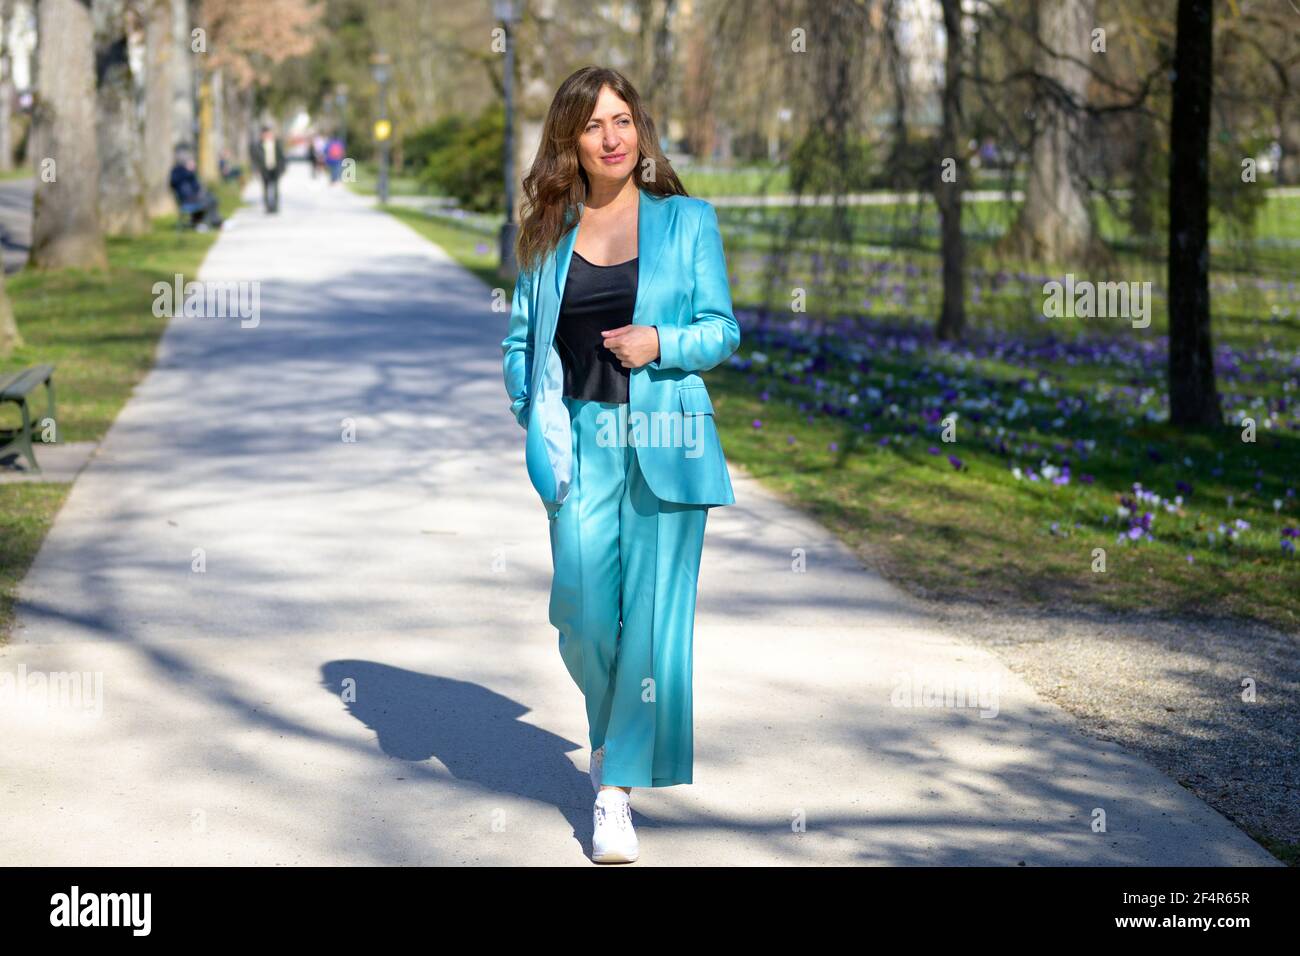 Elegante mujer de mediana edad atractiva en traje turquesa pantalones  caminar a lo largo un sendero en un parque arbolado en primavera mirando  hacia fuera al lado en un len lleno Fotografía